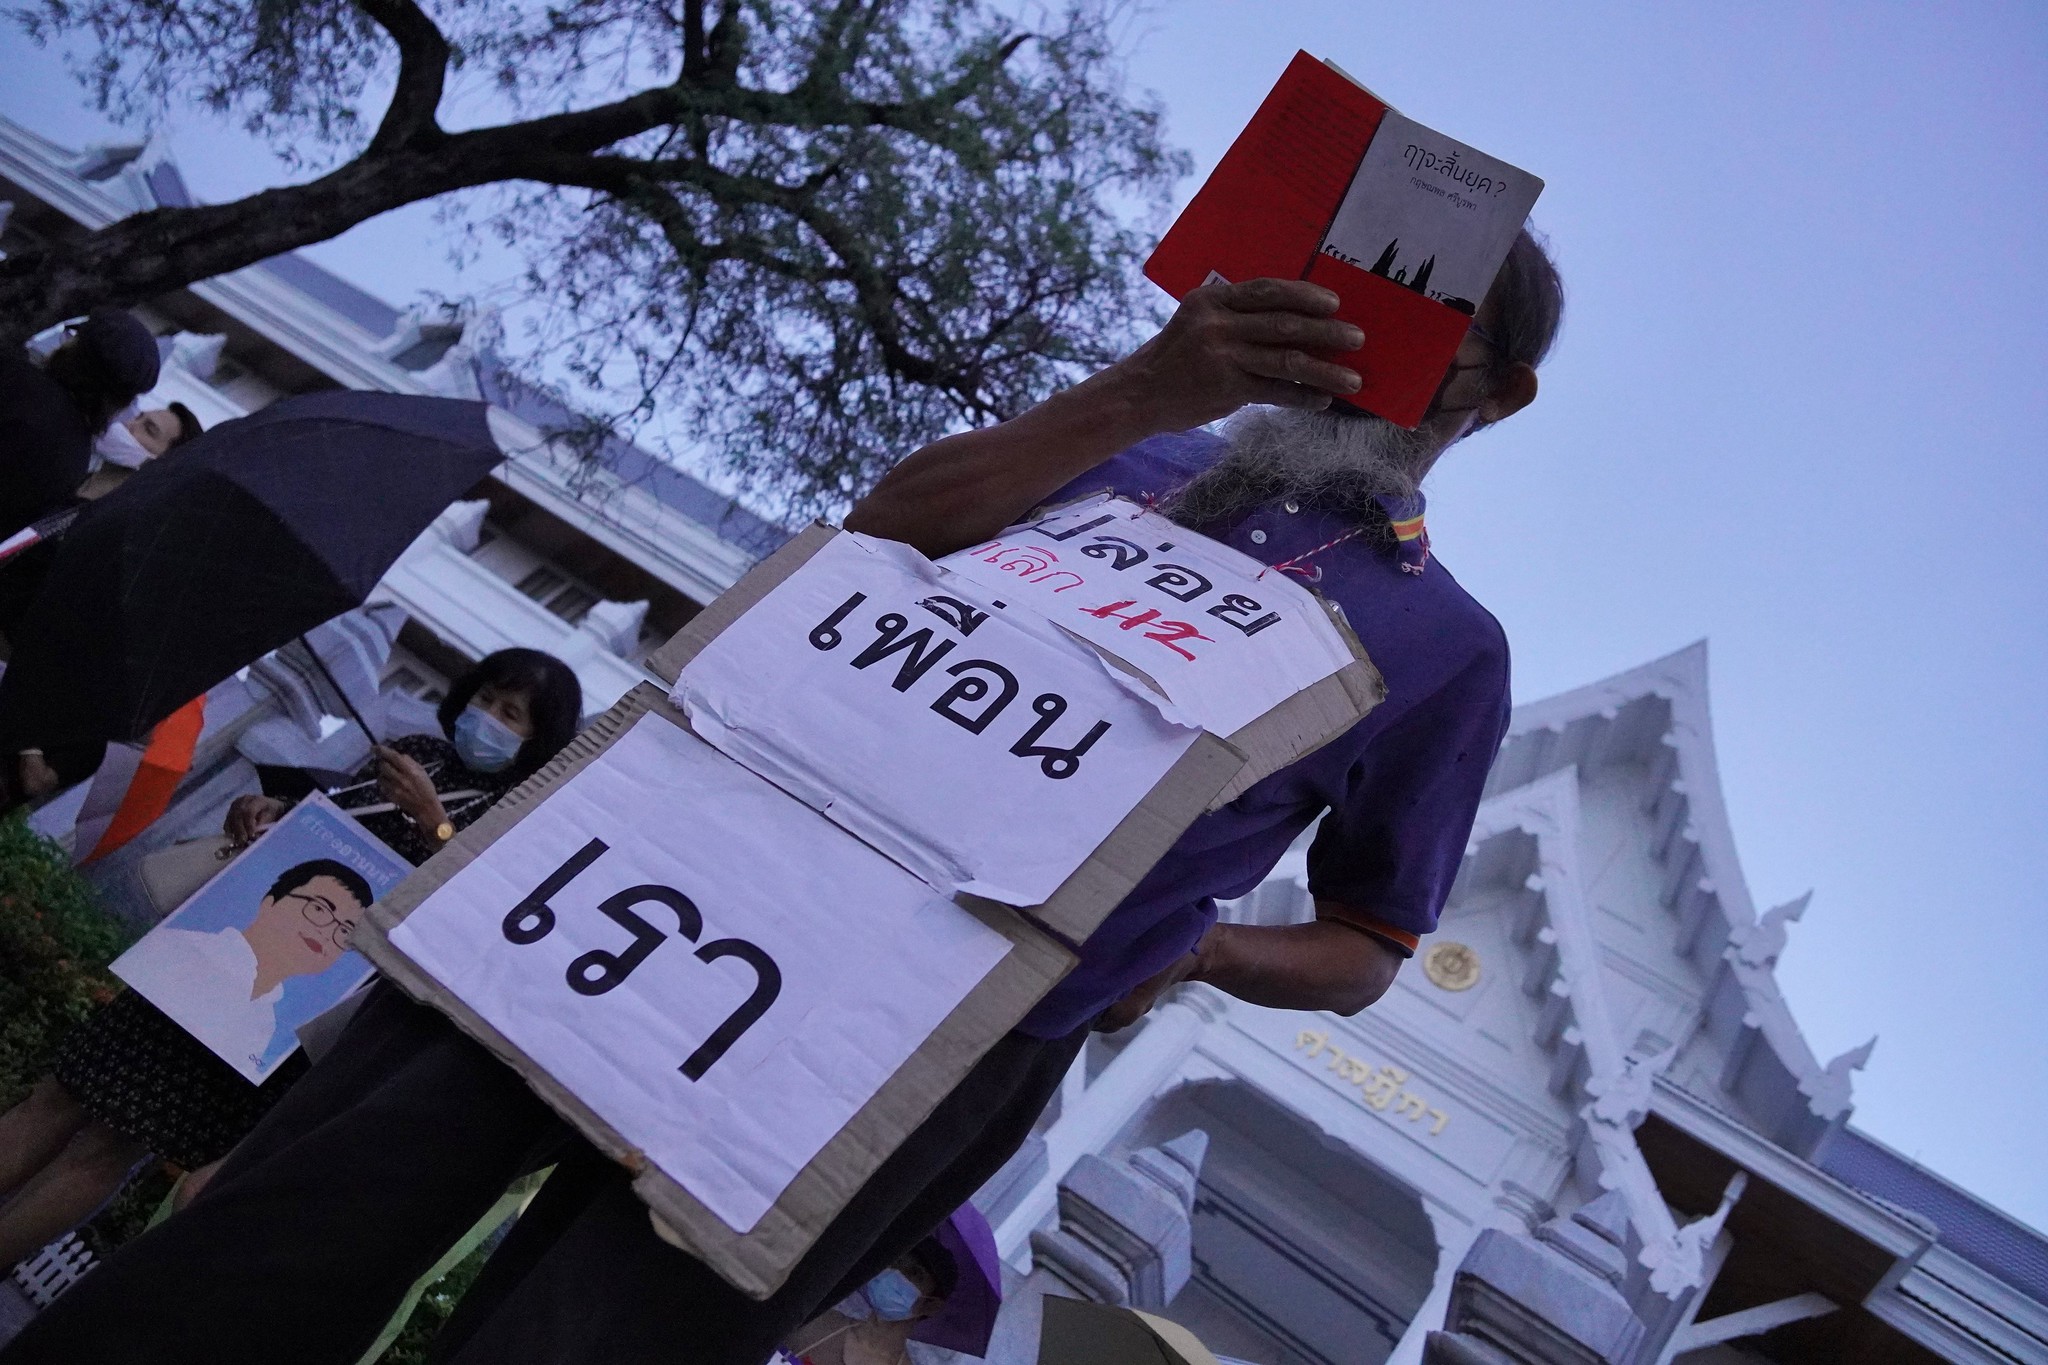 112WATCH คุยกับนักวิชาการด้านสันติภาพฯ ปมไทยใช้กฎหมายหมิ่นประมาทกษัตริย์เกินกว่าเหตุ